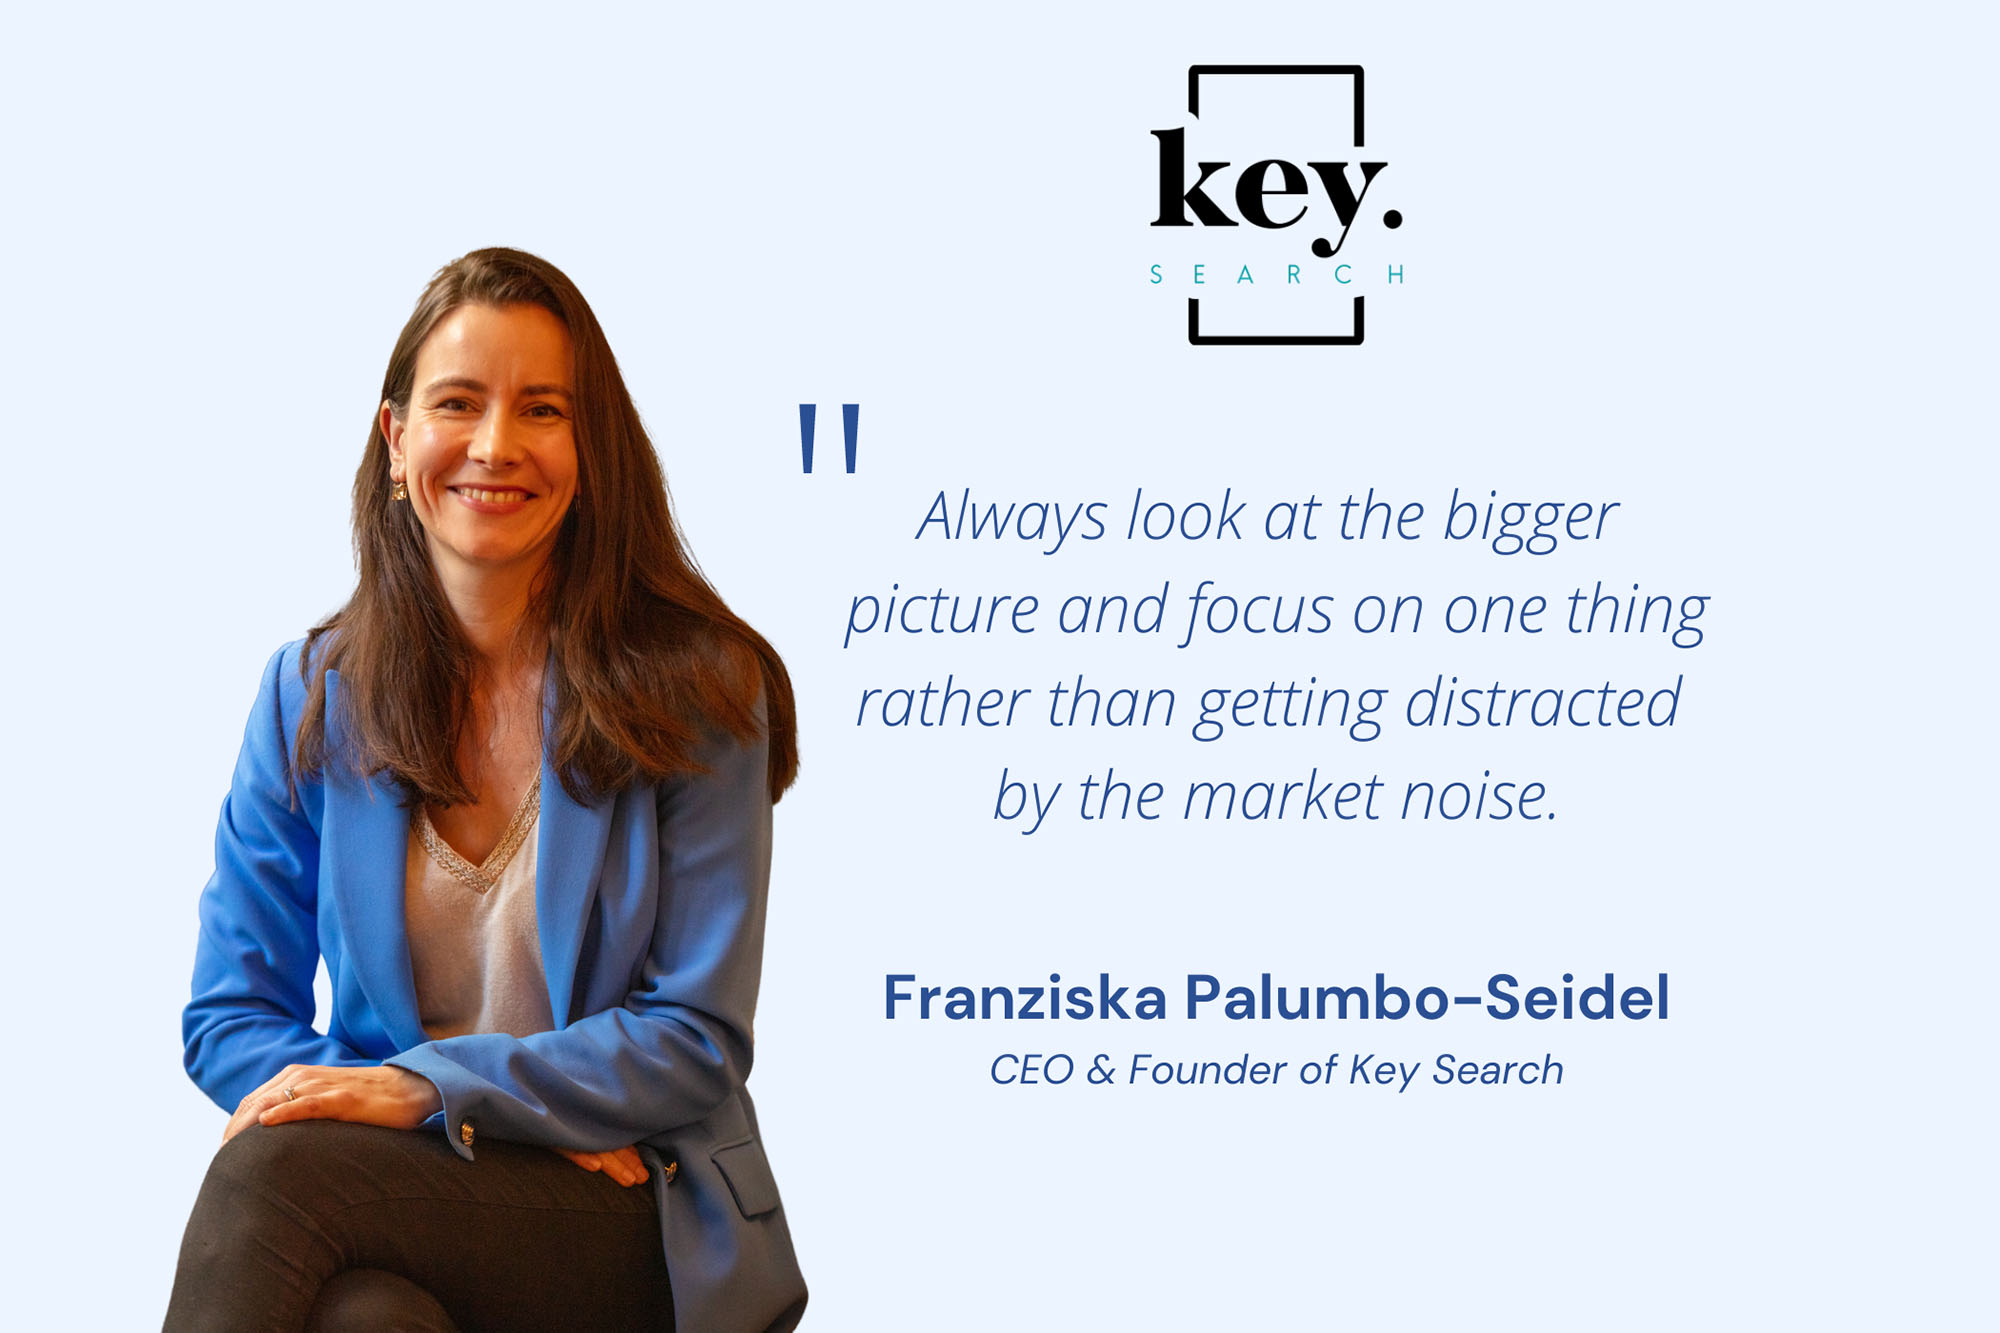 Franziska-Palumbo-Seidel-CEO-Founder-of-Key-Search-1-2100x1400